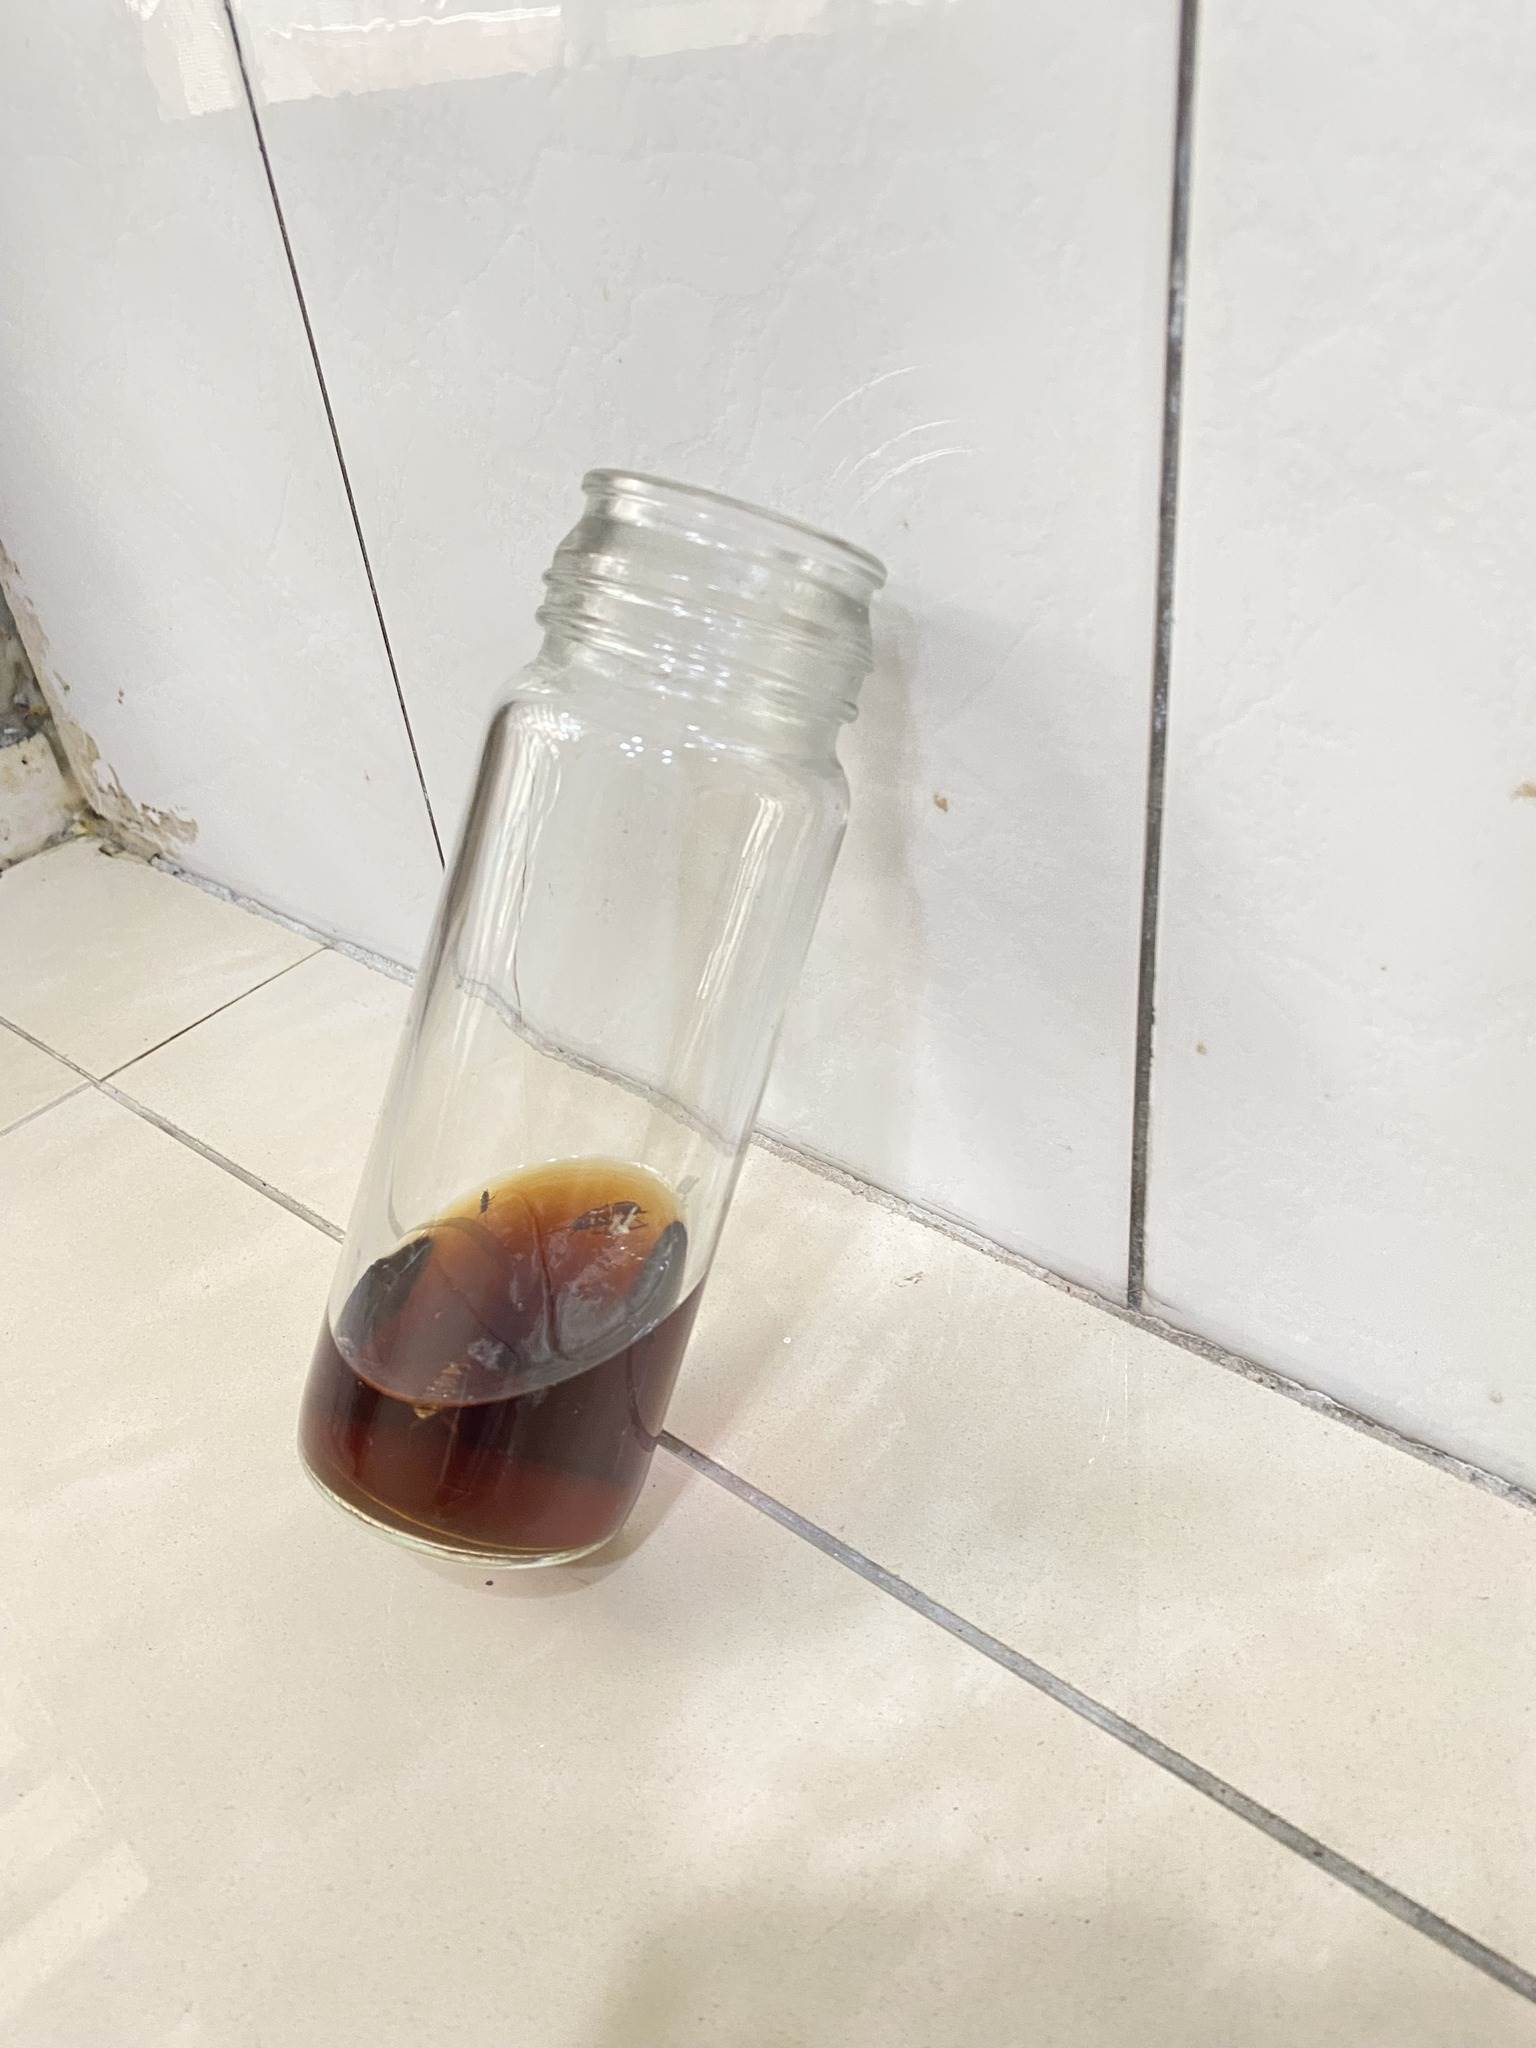 家事達人陳映如分享，將裝了啤酒的瓶子斜靠在牆面，可以有效除蟑螂。